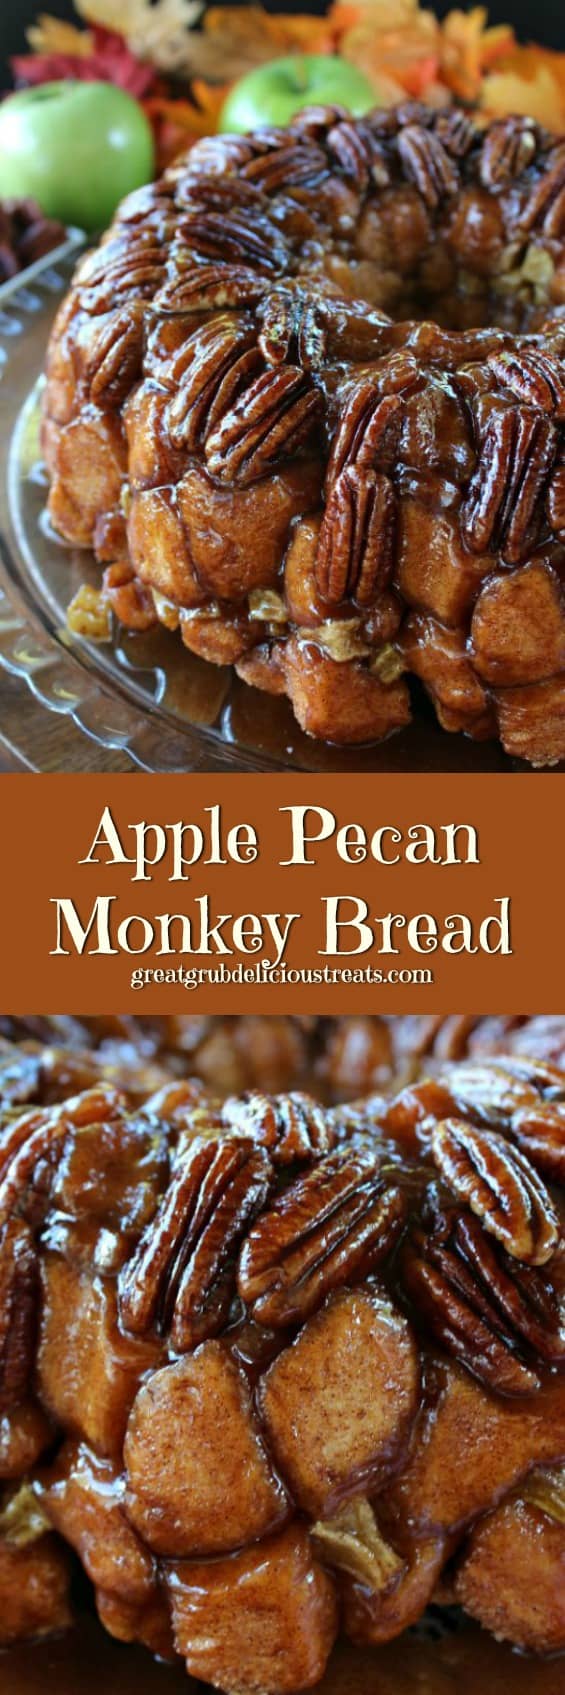 Apple Pecan Monkey Bread